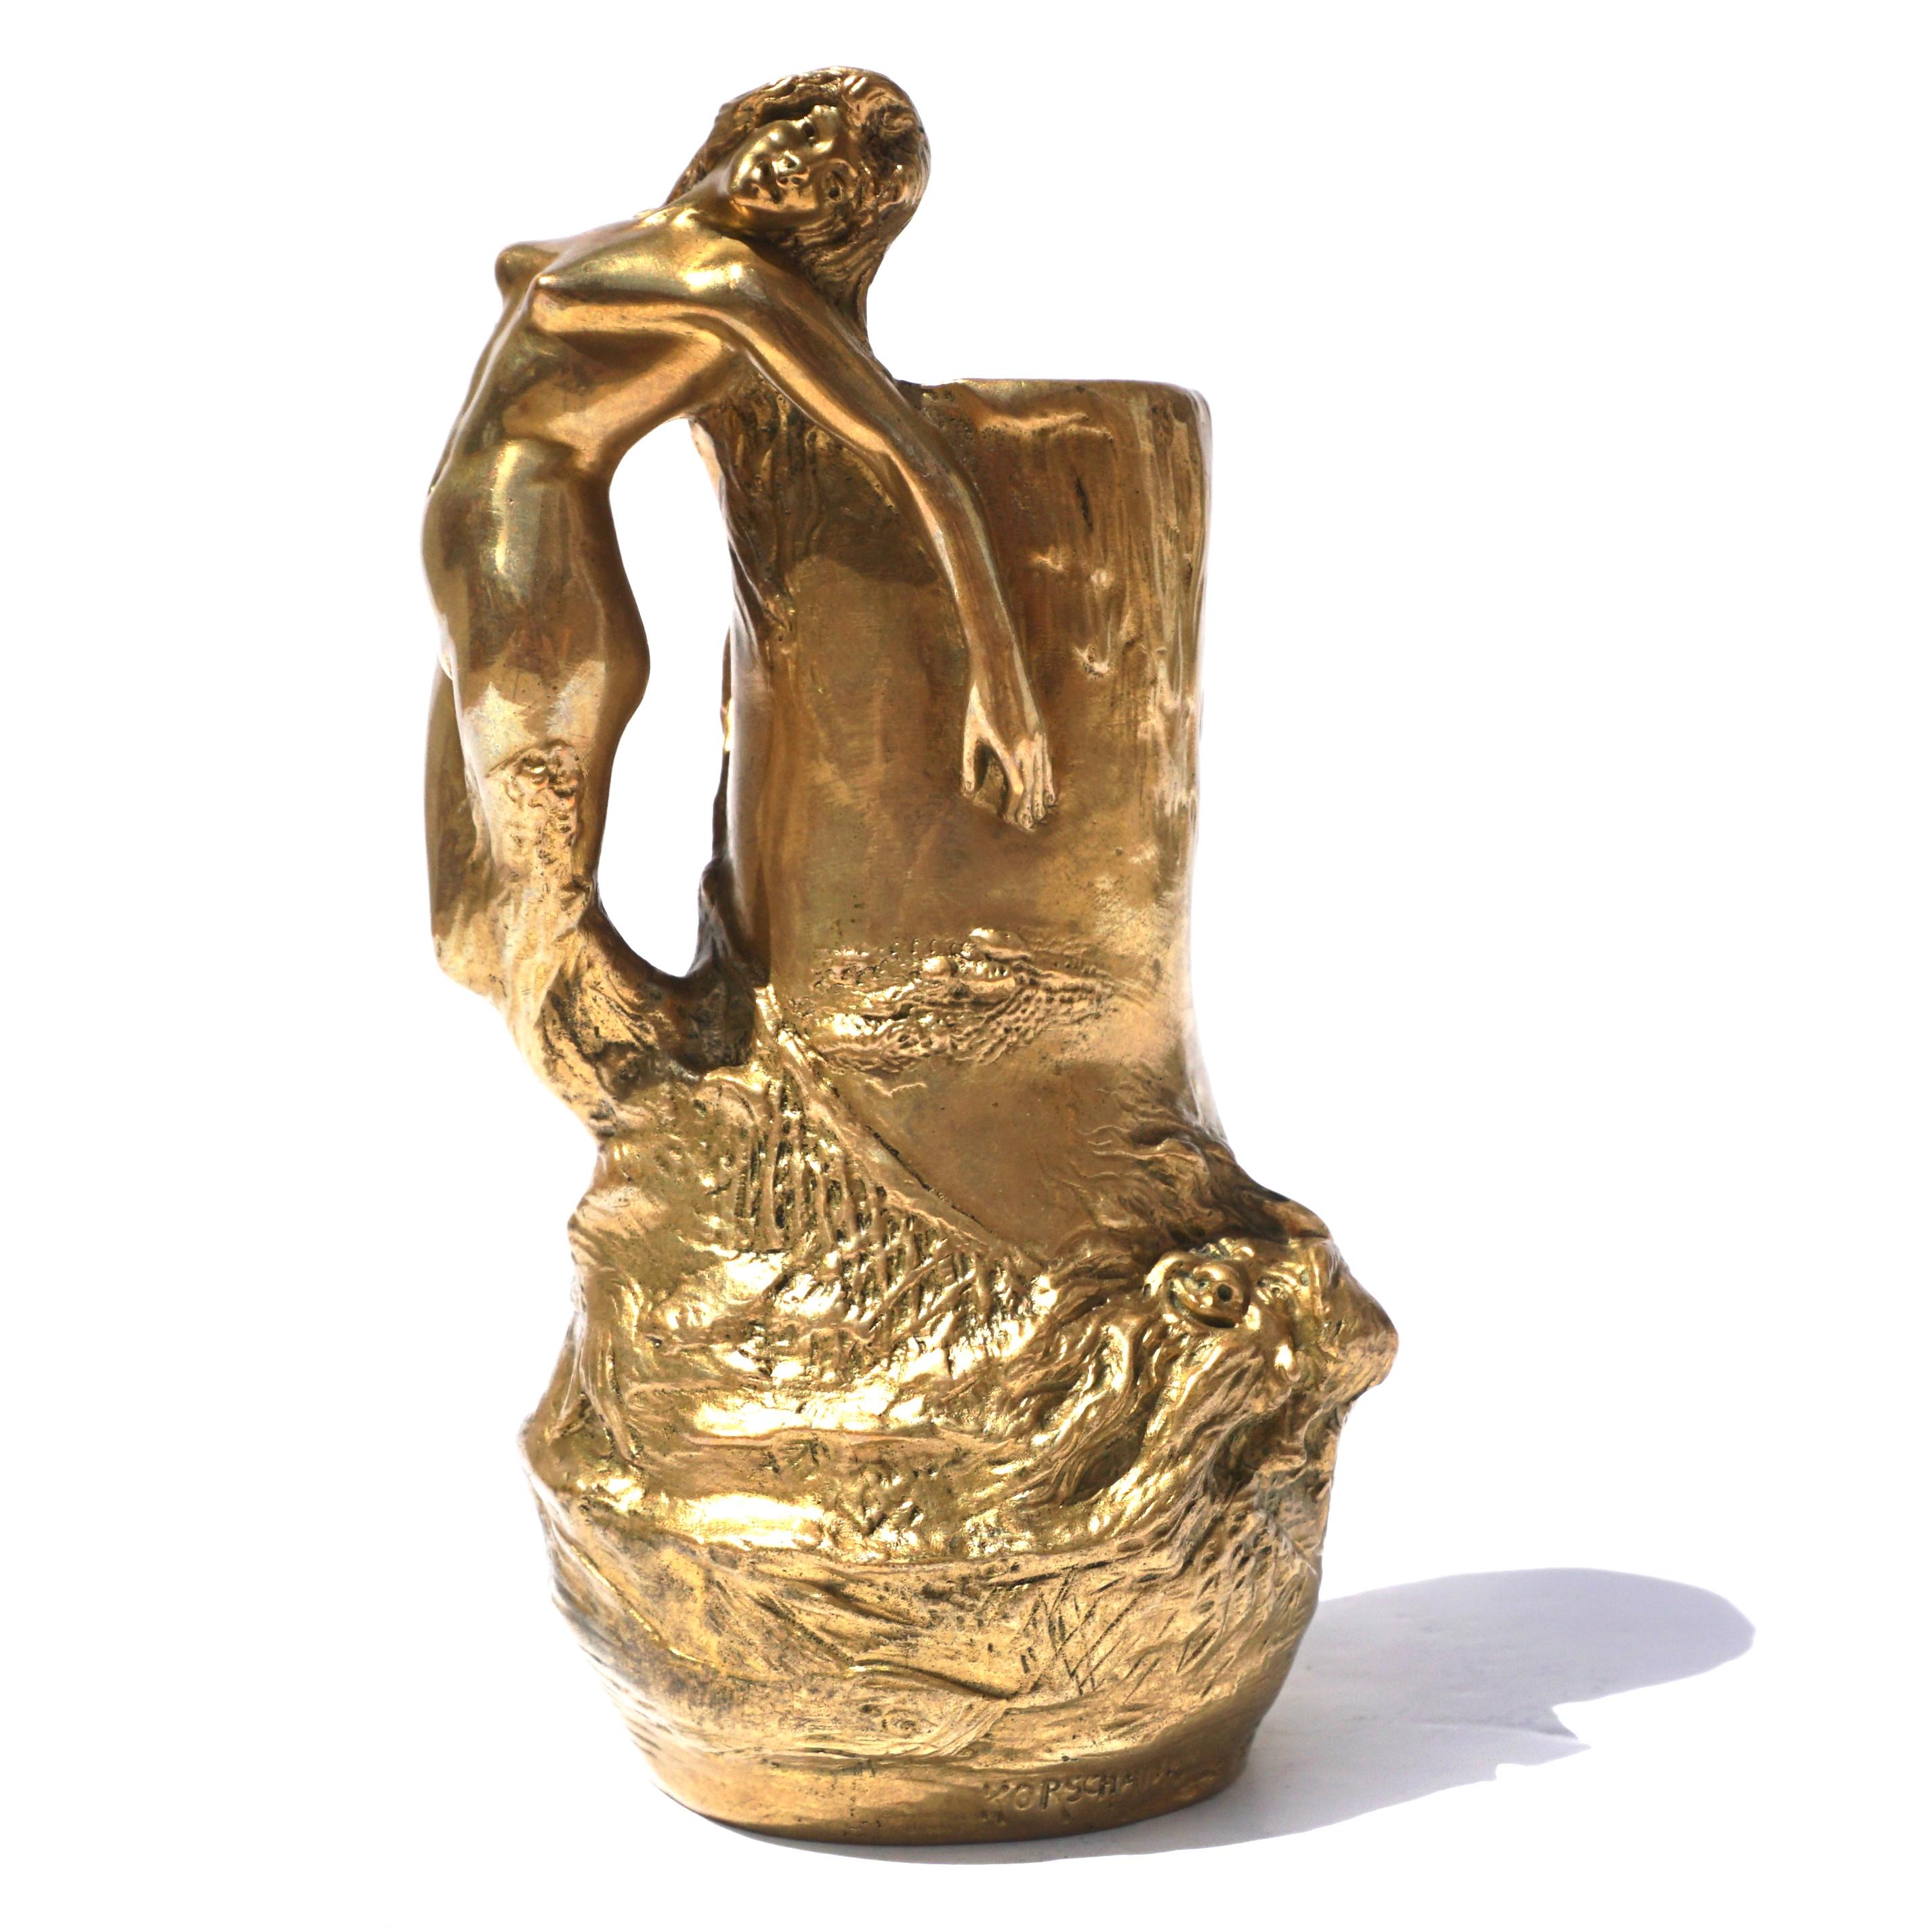 Charles Korschann Tschechoslowakisch 

Jugendstil Vase aus vergoldeter Bronze mit Knospen. Gegossen nach einem Modell von Charles (Karl) Korschann, um 1899, in Form einer Urne, mit einem Henkel in Form einer Sirene, die sich in einem Netz